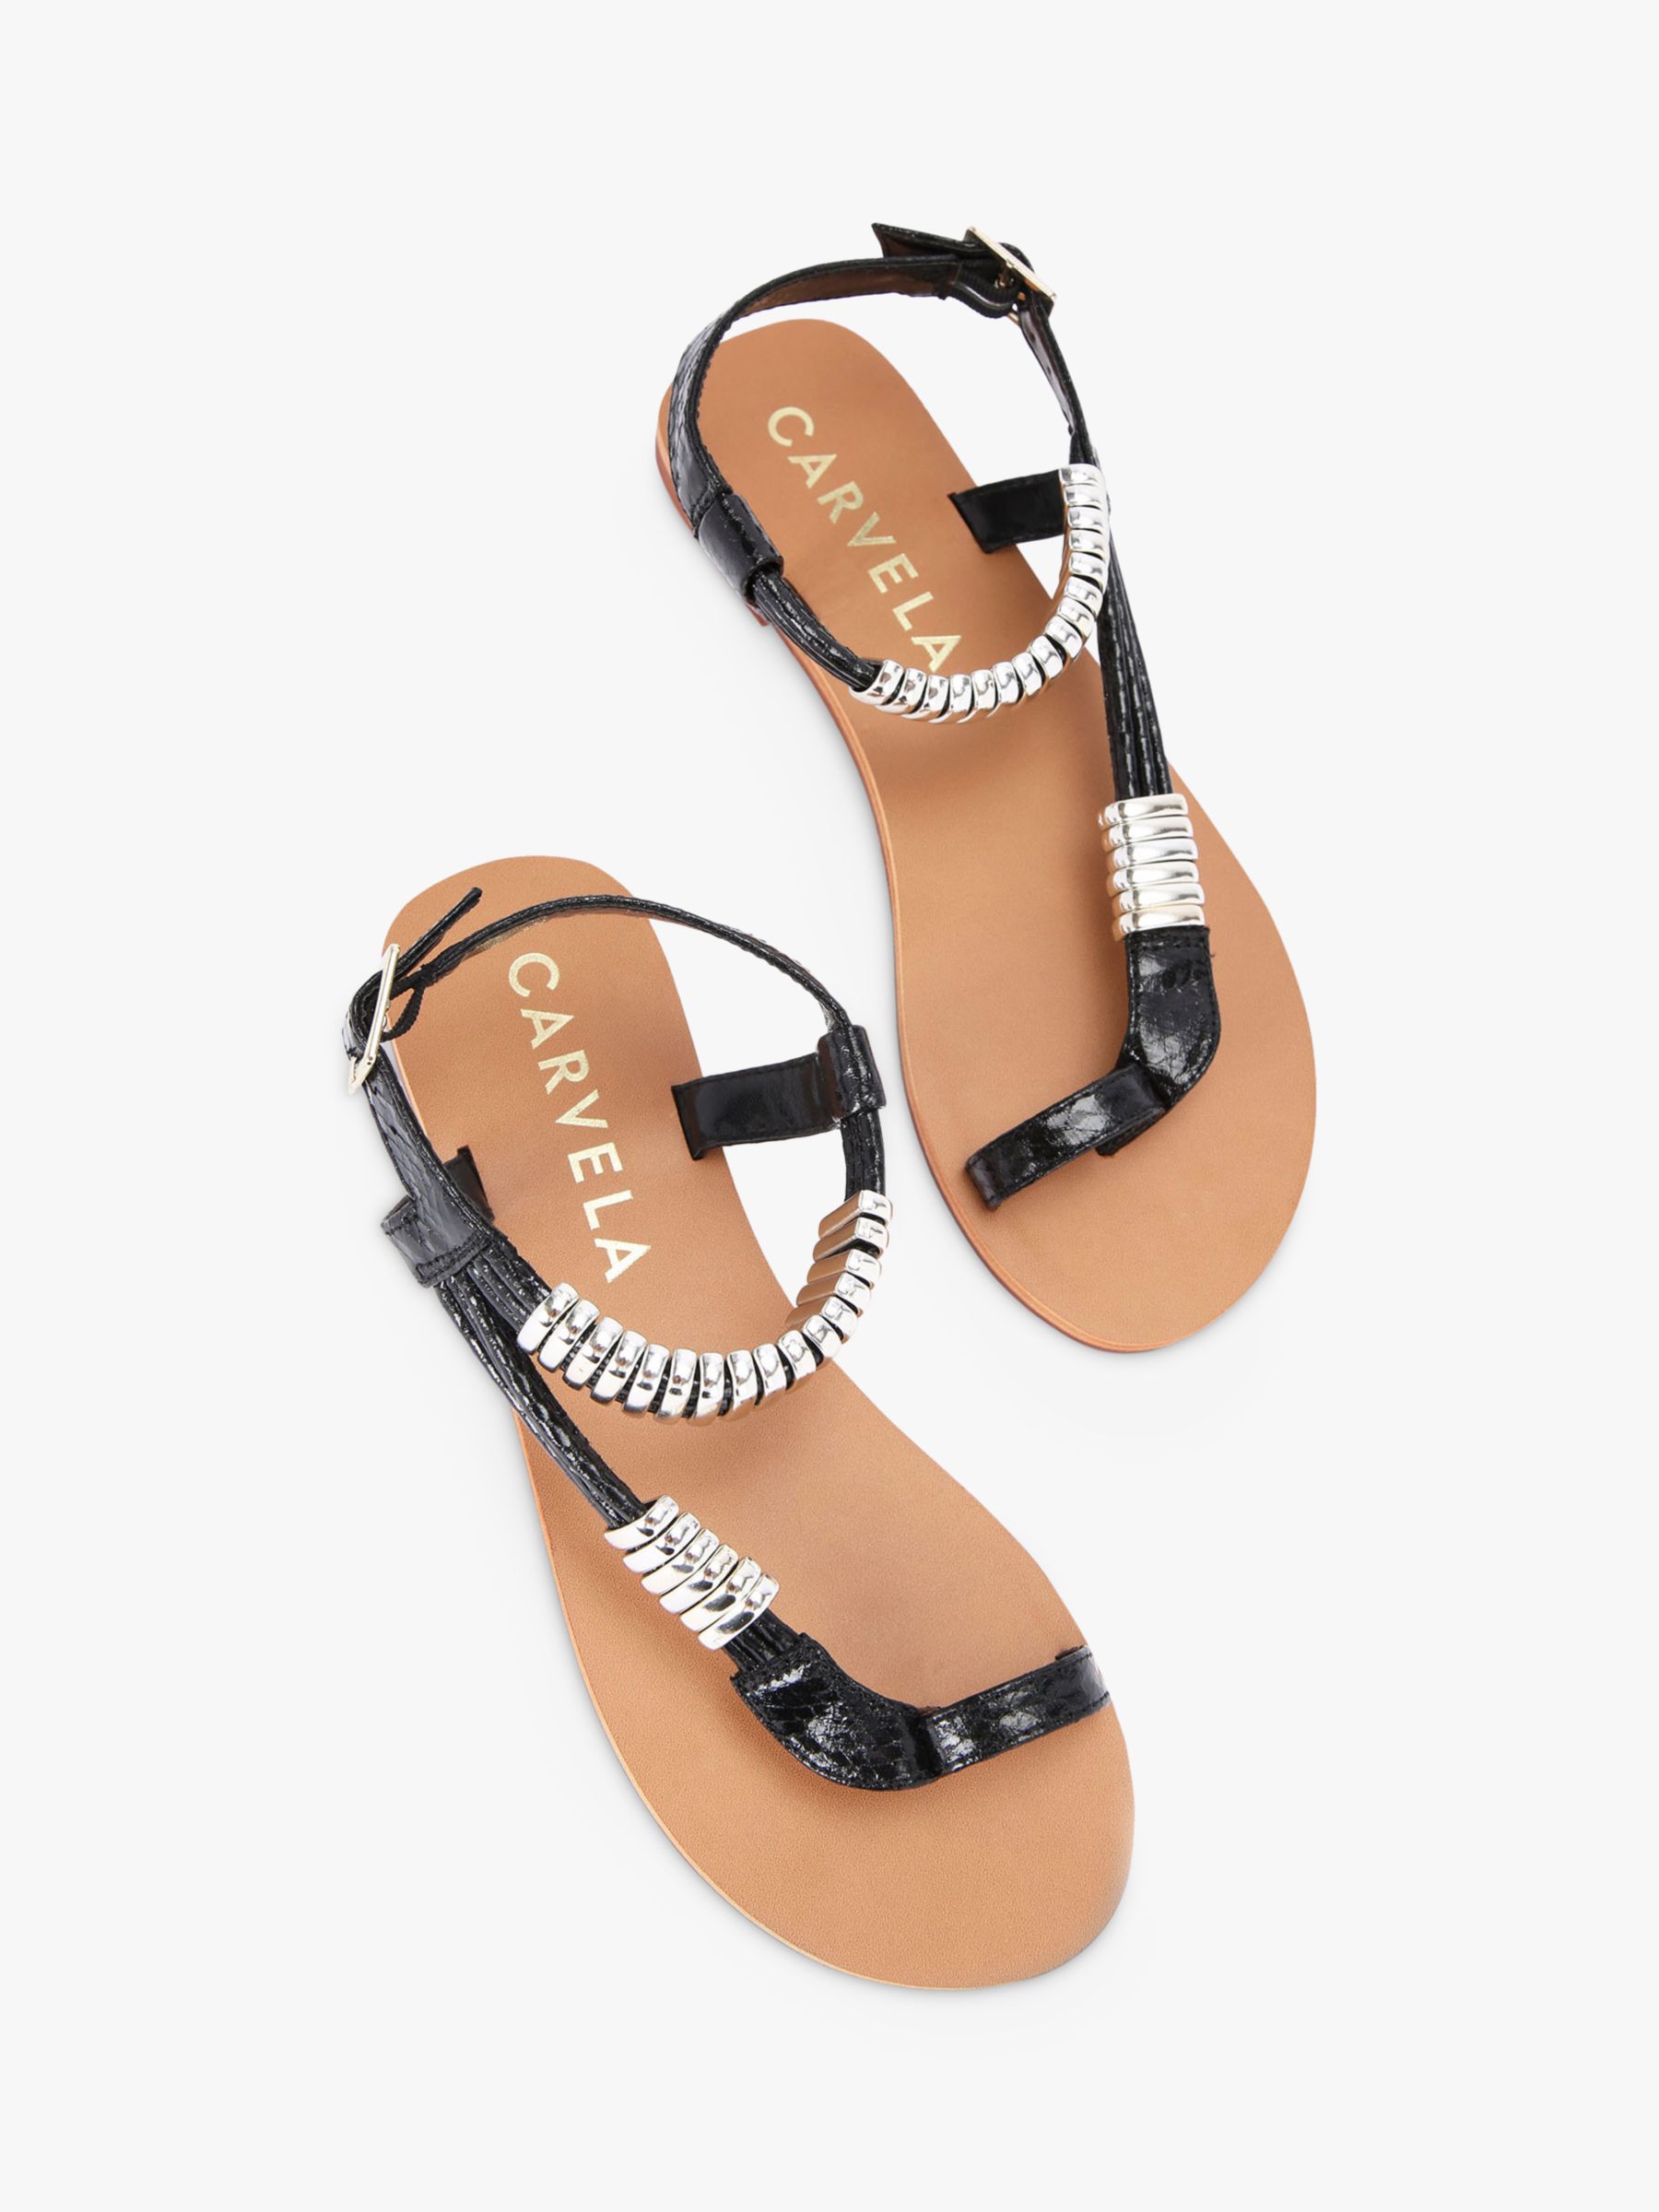 Buy Carvela Klipper Flat Sandals Online at johnlewis.com